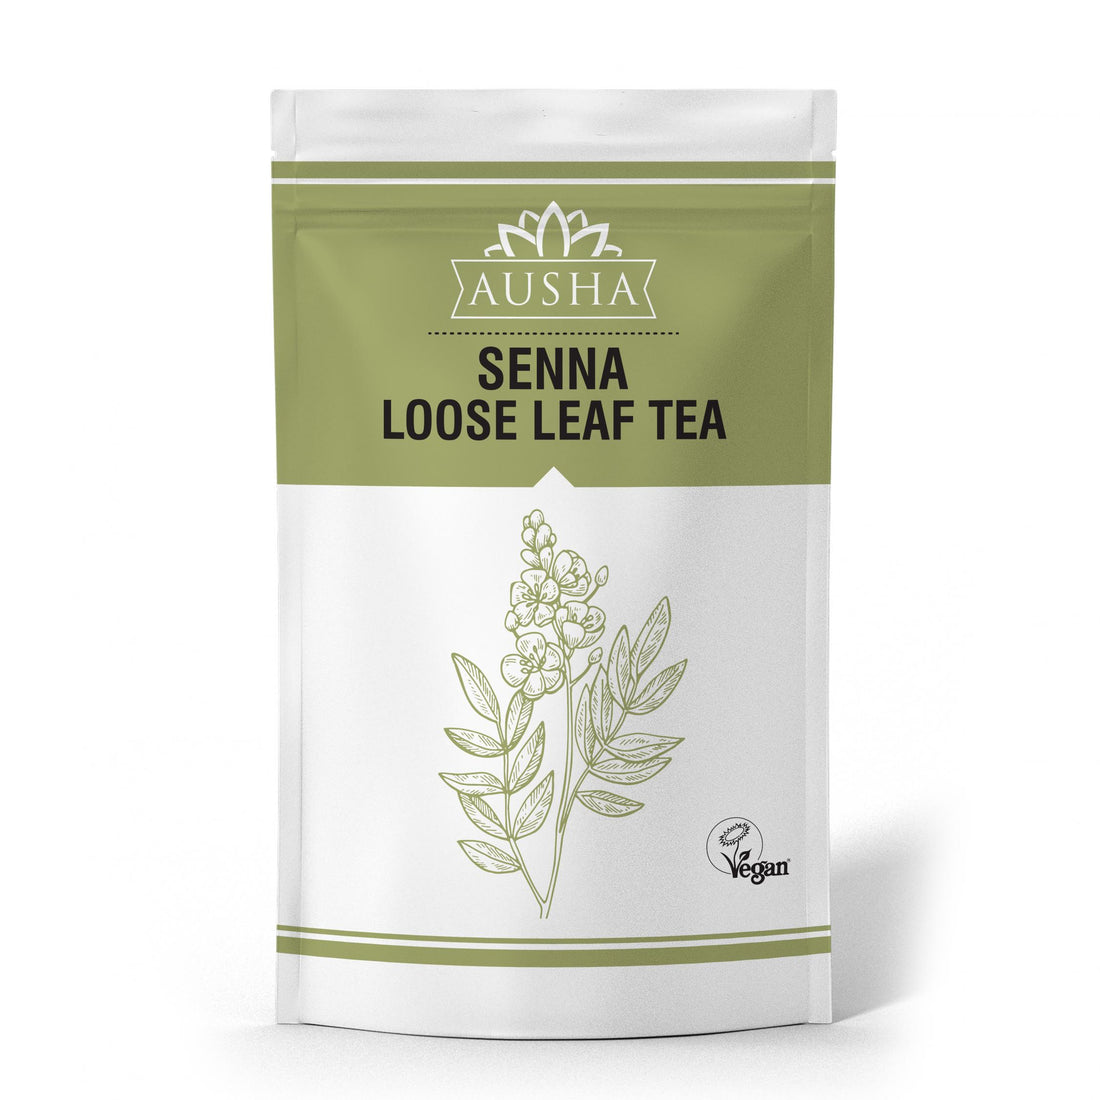 Ausha Senna Loose Leaf Tea 100g